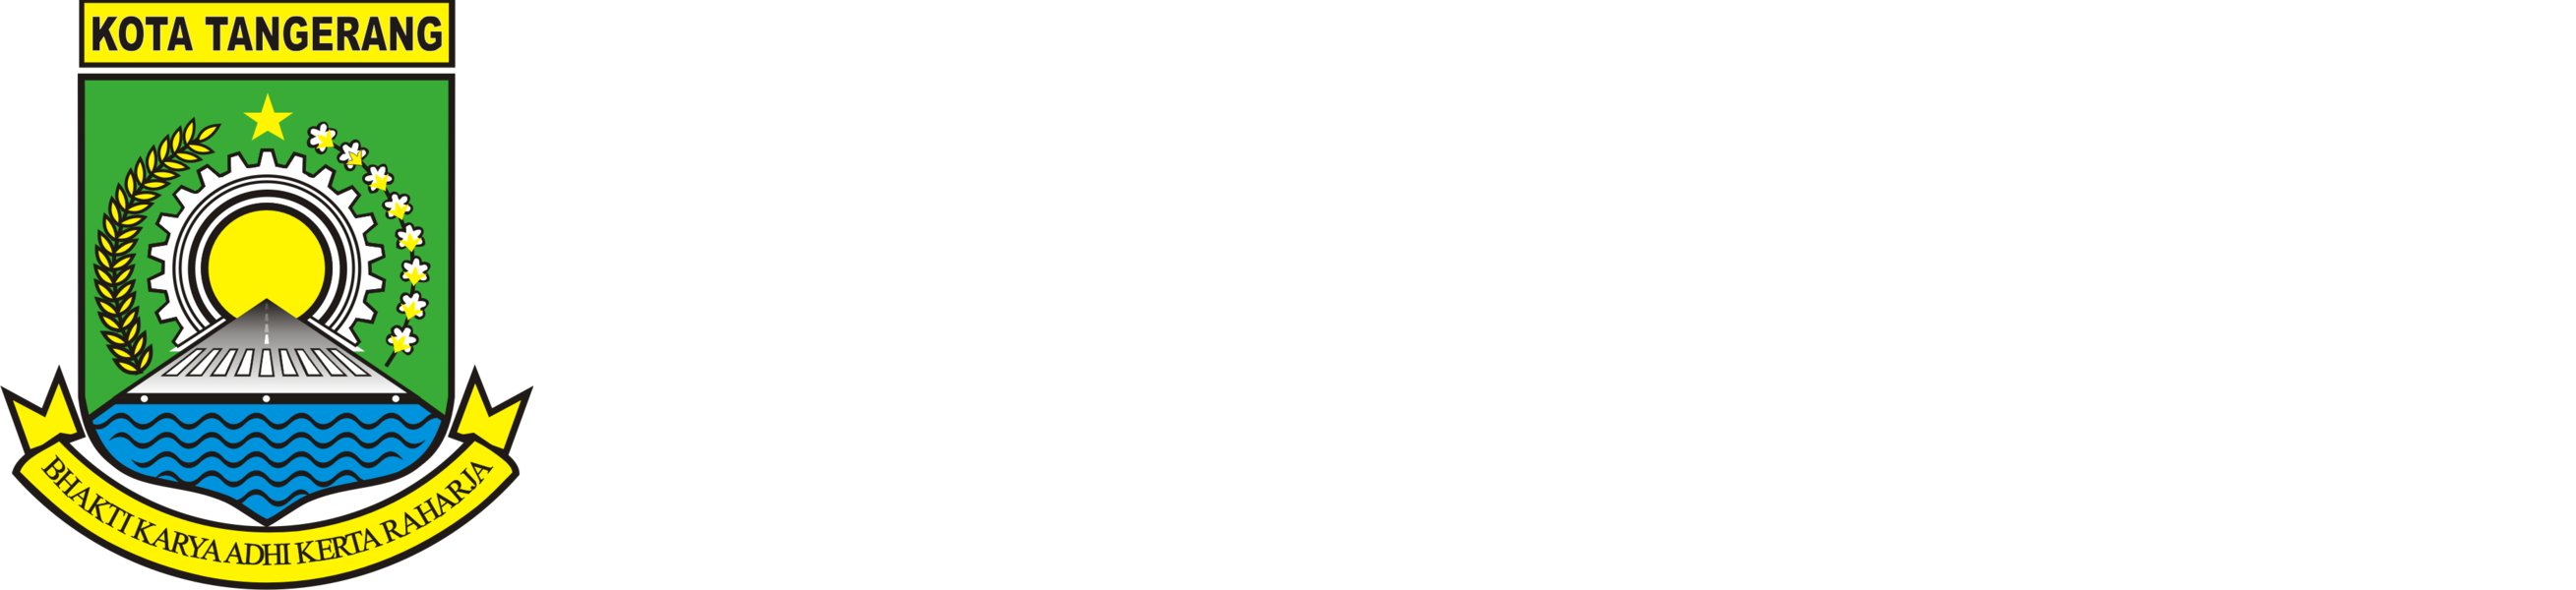 Logo diskominfo Kota Tangerang